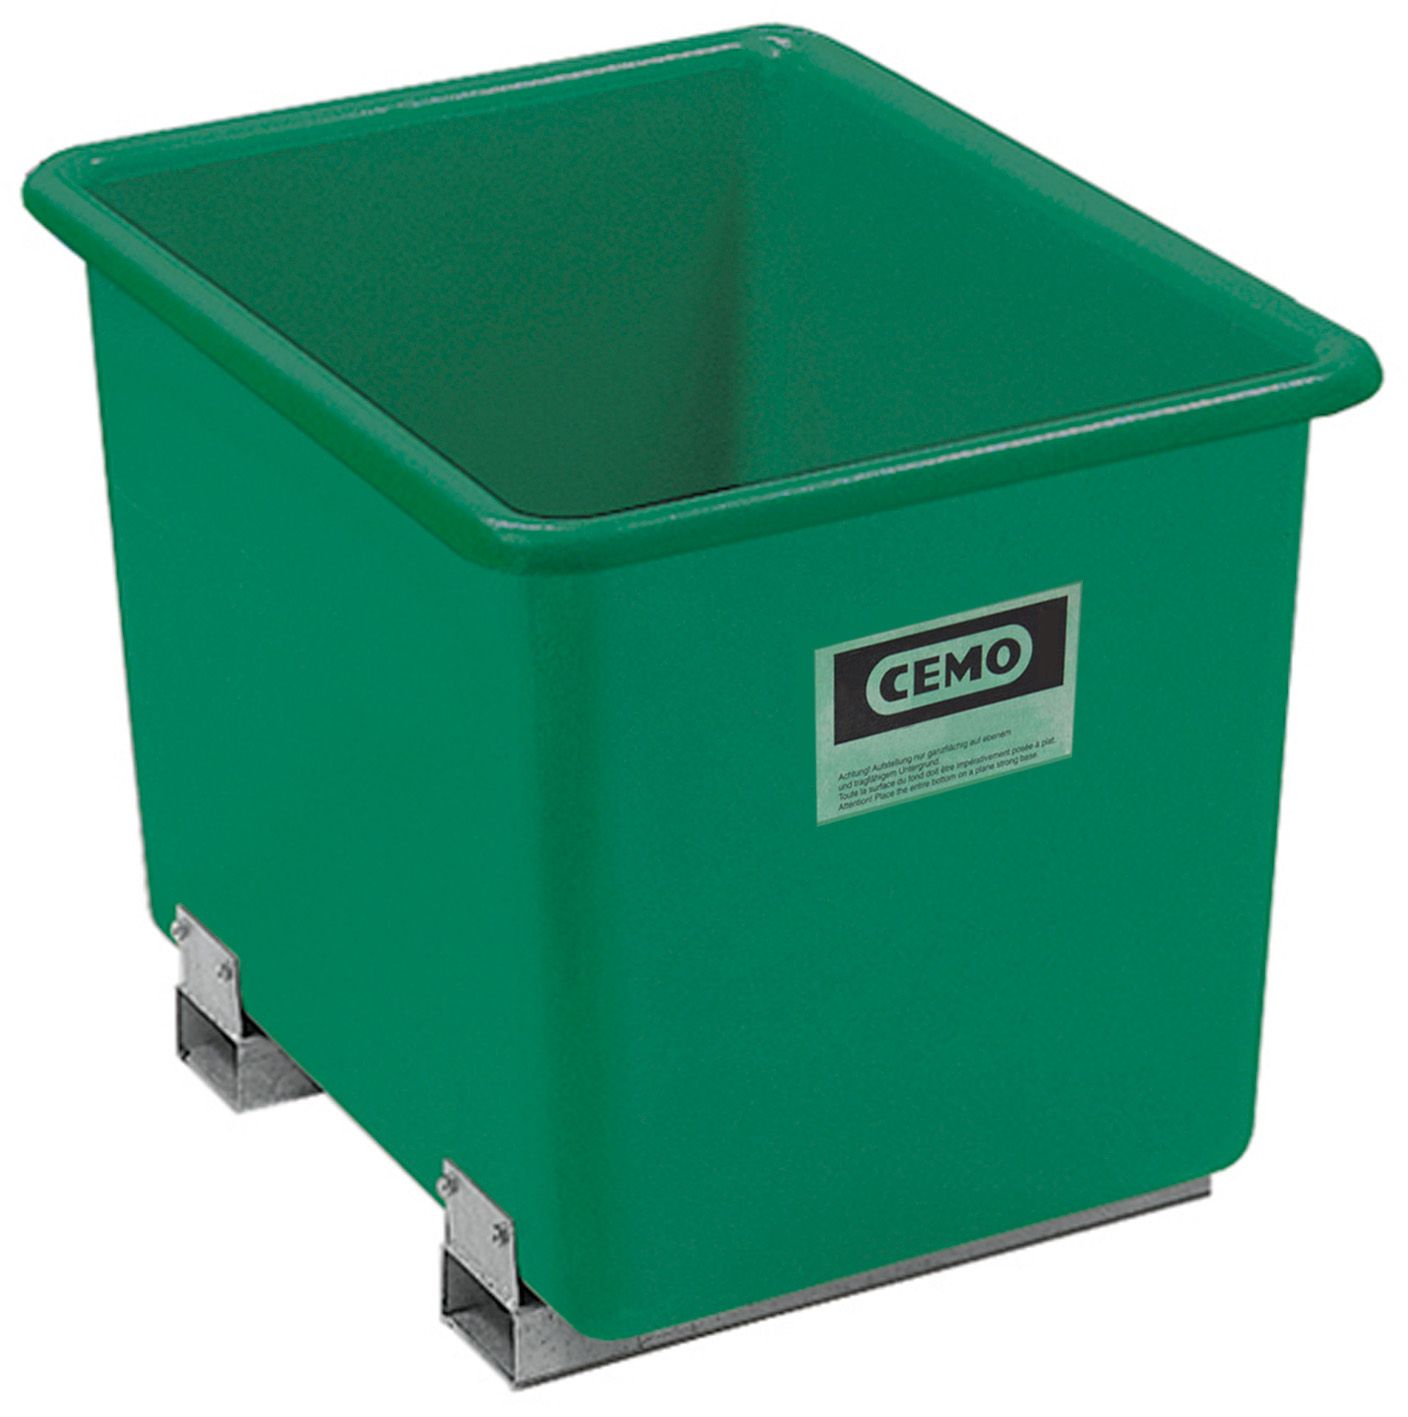 CEMO GFK-Rechteckbehälter 700 l mit Staplertaschen, grün - 1207